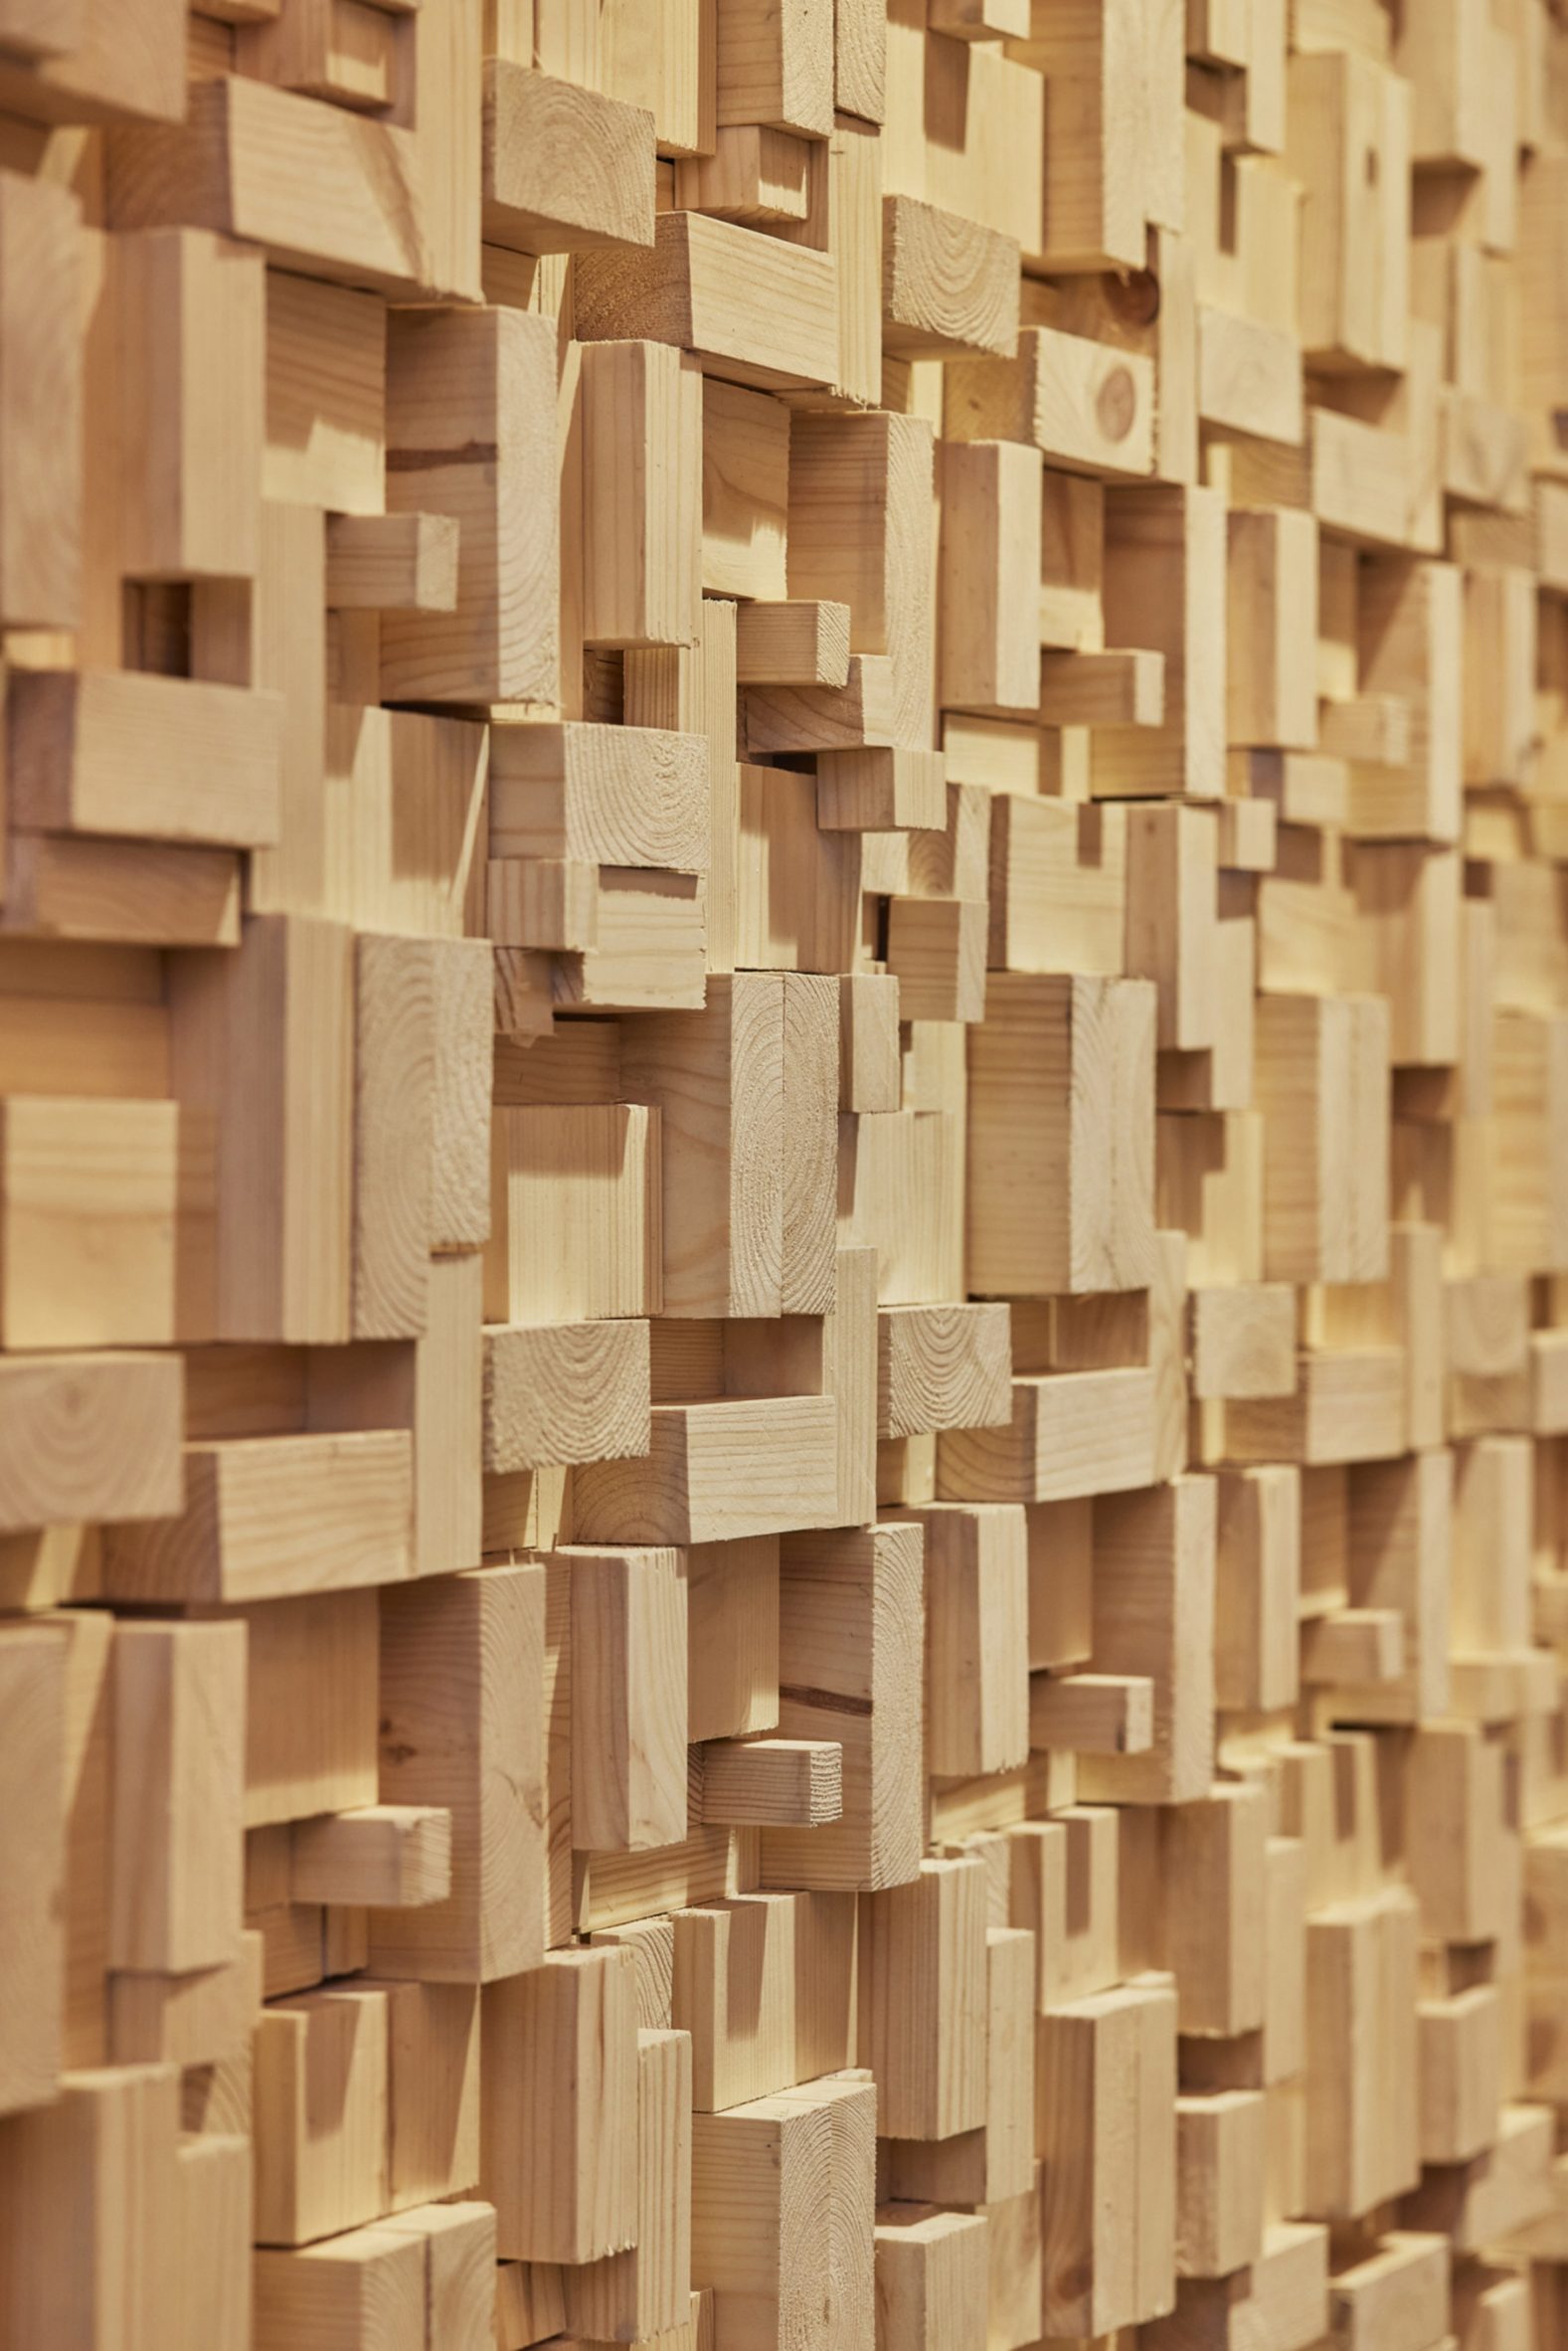 Decorative timber block wall